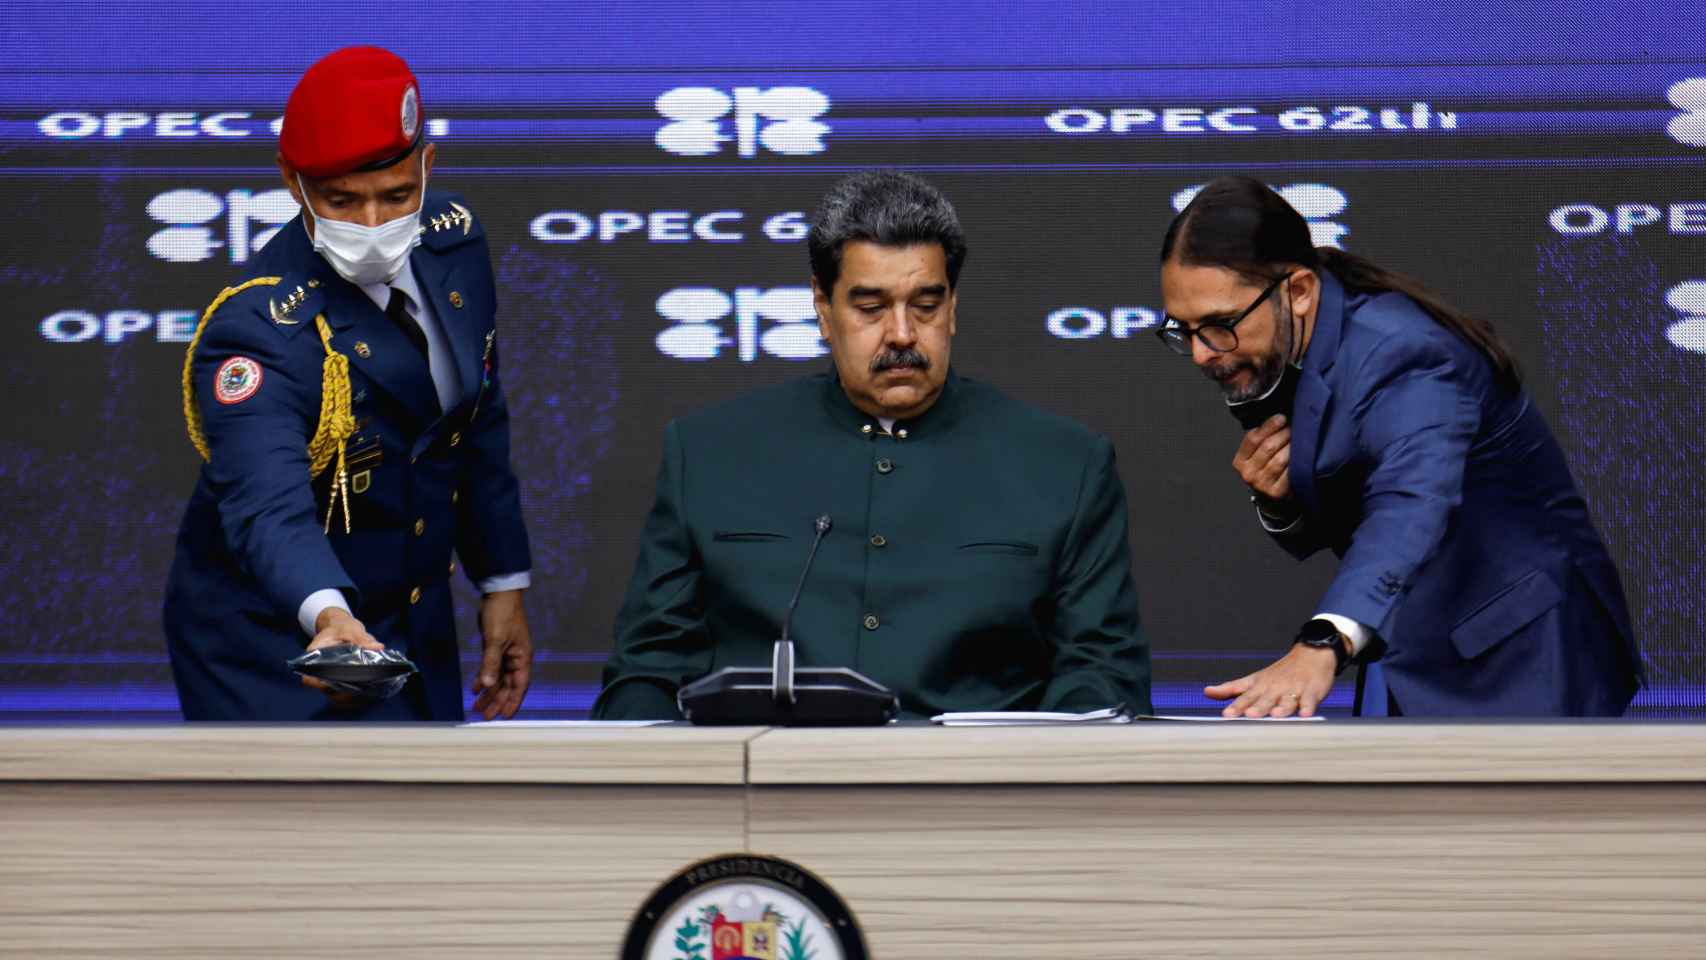 El presidente venezolano, Nicolás Maduro, durante una reunión de la OPEC.